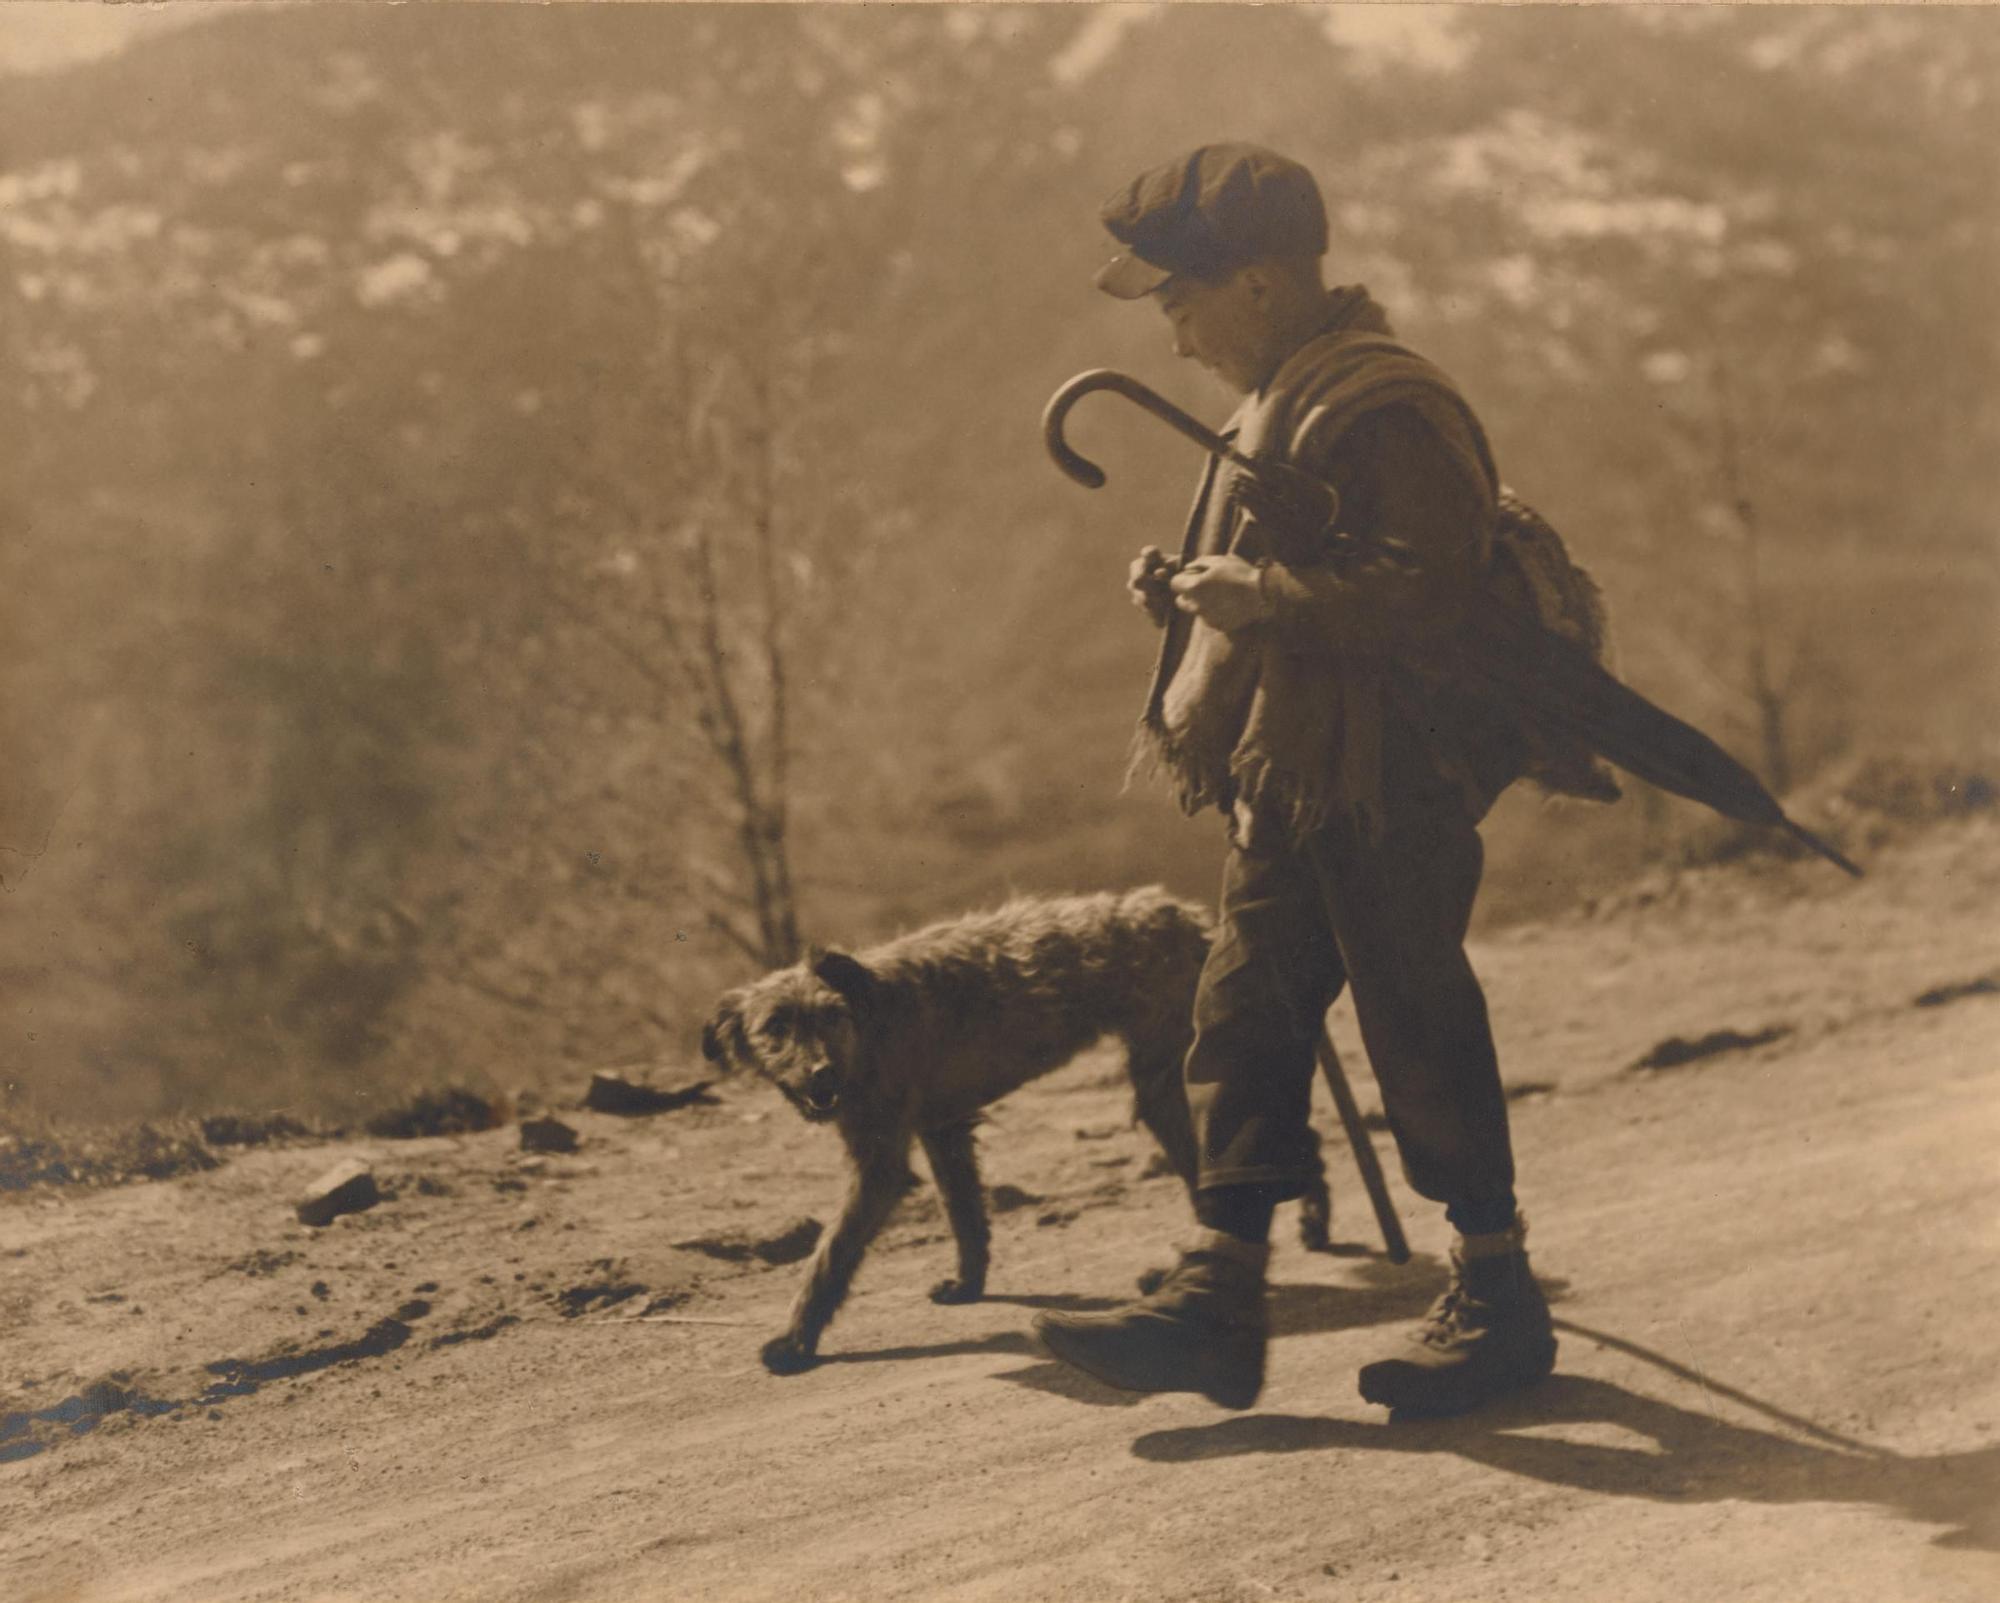 Col·loqui (remuntant Porqueres per la carretera de Banyoles a Olot) va ser una de les obres presentades al concurs de fotografia per a aficionats del 1932.